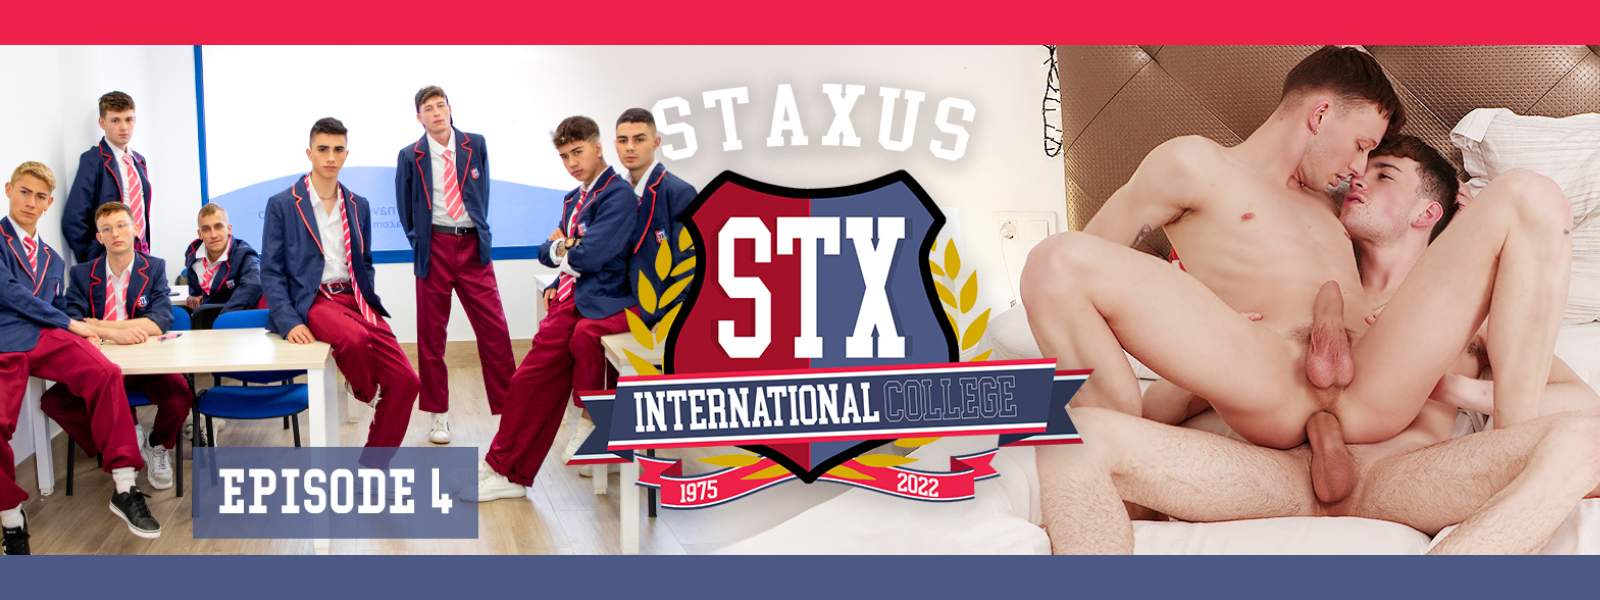 Staxus International College Episode 4